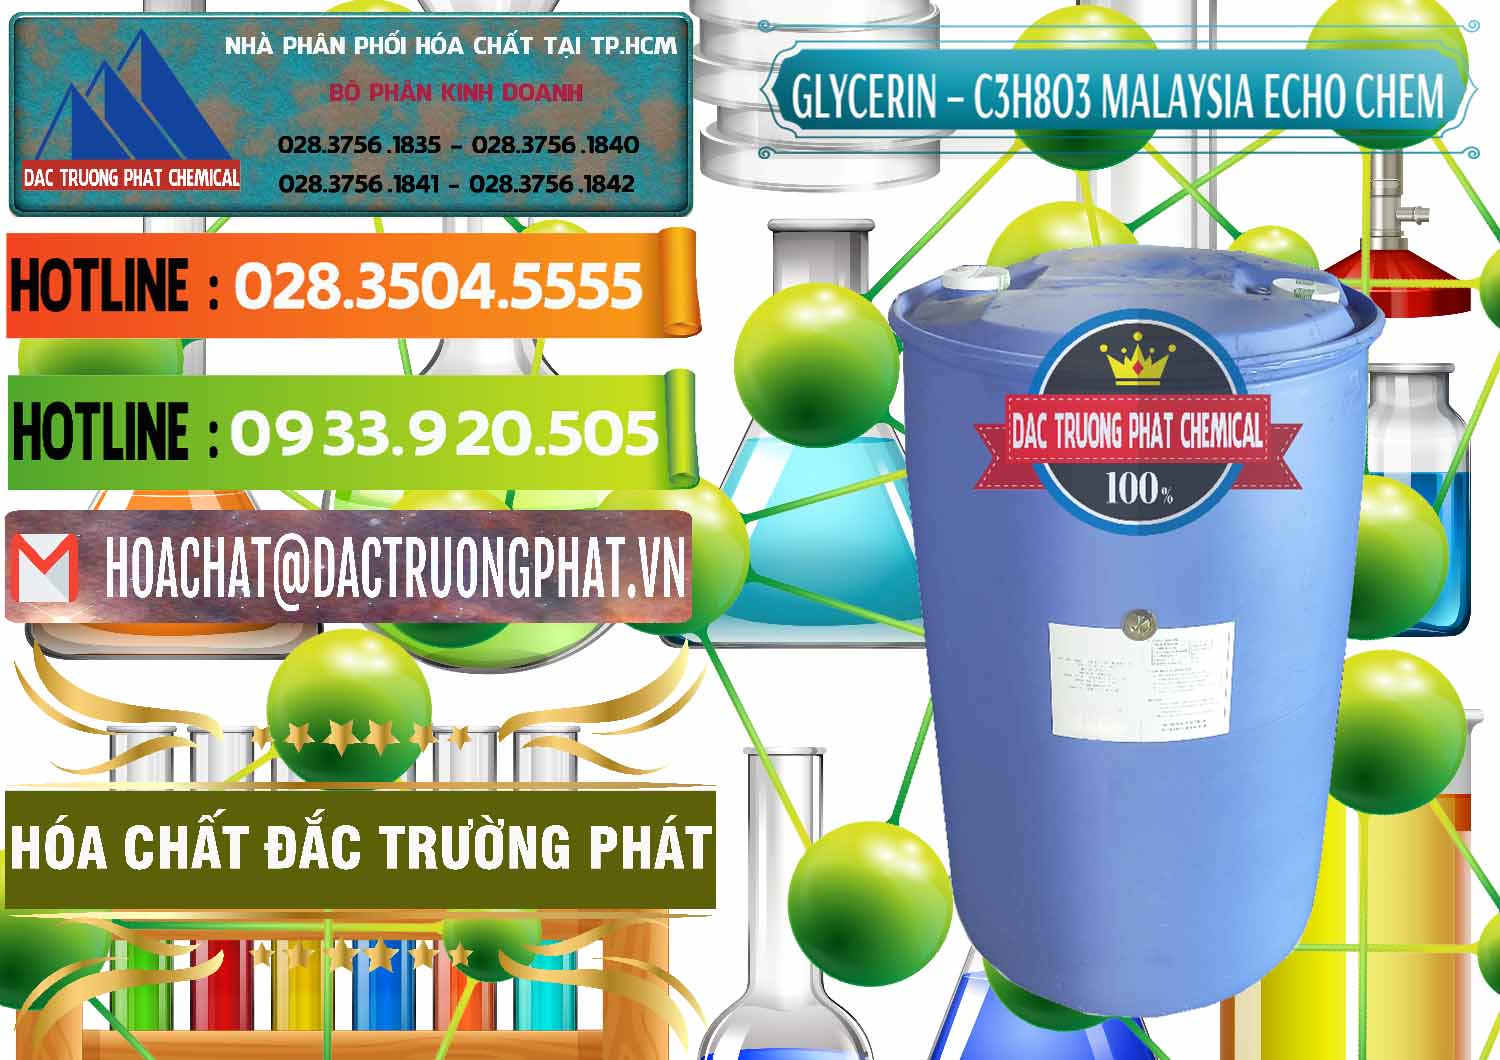 Đơn vị kinh doanh và bán C3H8O3 - Glycerin 99.7% Echo Chem Malaysia - 0273 - Nhà cung cấp _ kinh doanh hóa chất tại TP.HCM - cungcaphoachat.com.vn